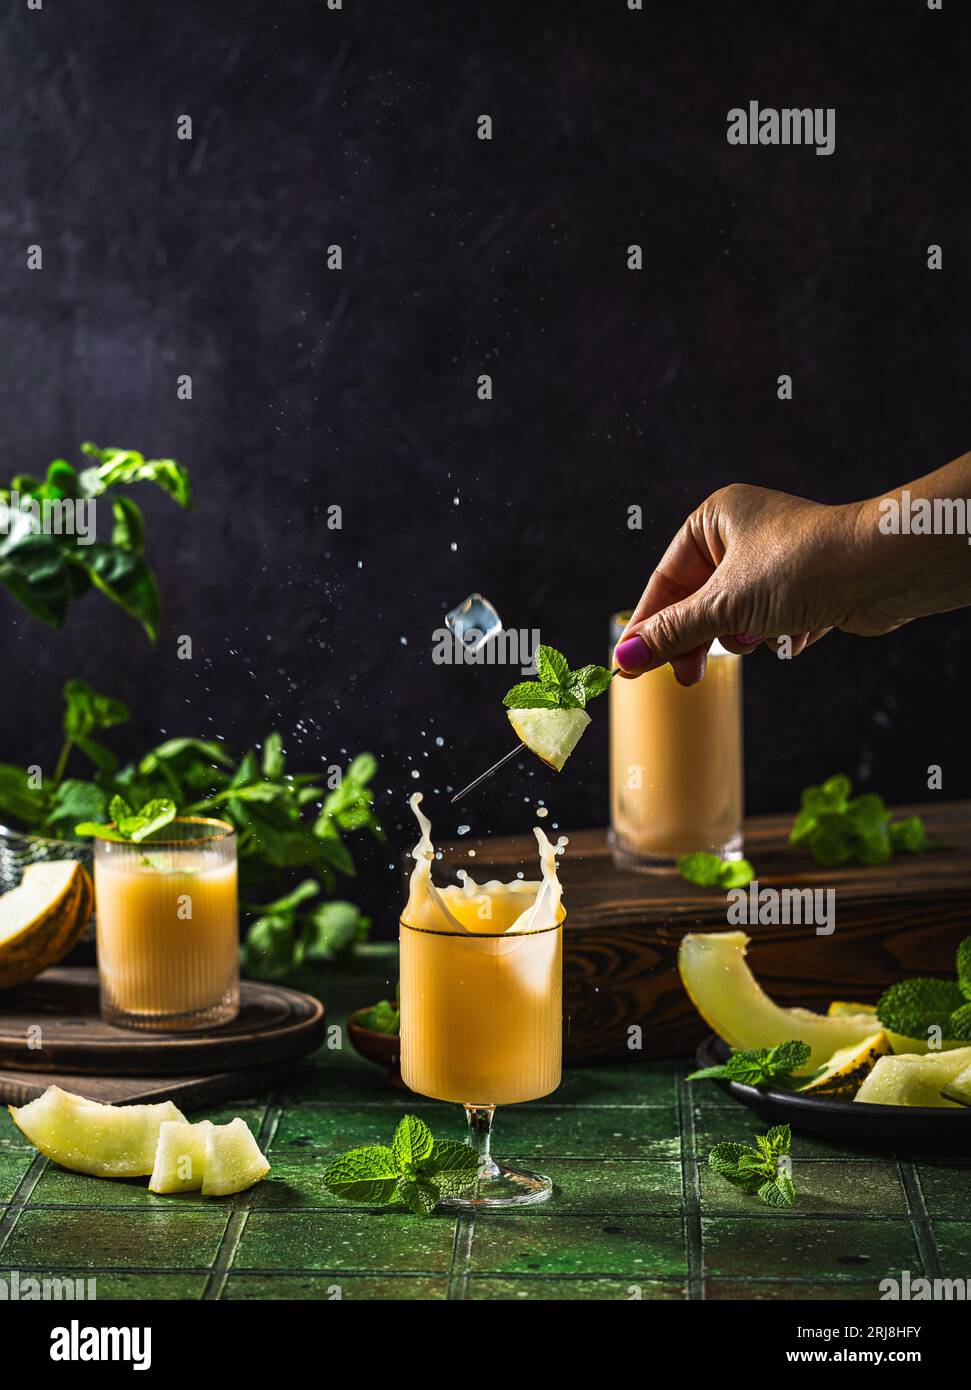 Frau bereitet Melonencocktail mit Minze im Glas auf dunkelgrünem Keramikfliesenhintergrund zu, Nahaufnahme. Getränke im Herbst und alkoholische Cocktails im Sommer. Alcoh Stockfoto